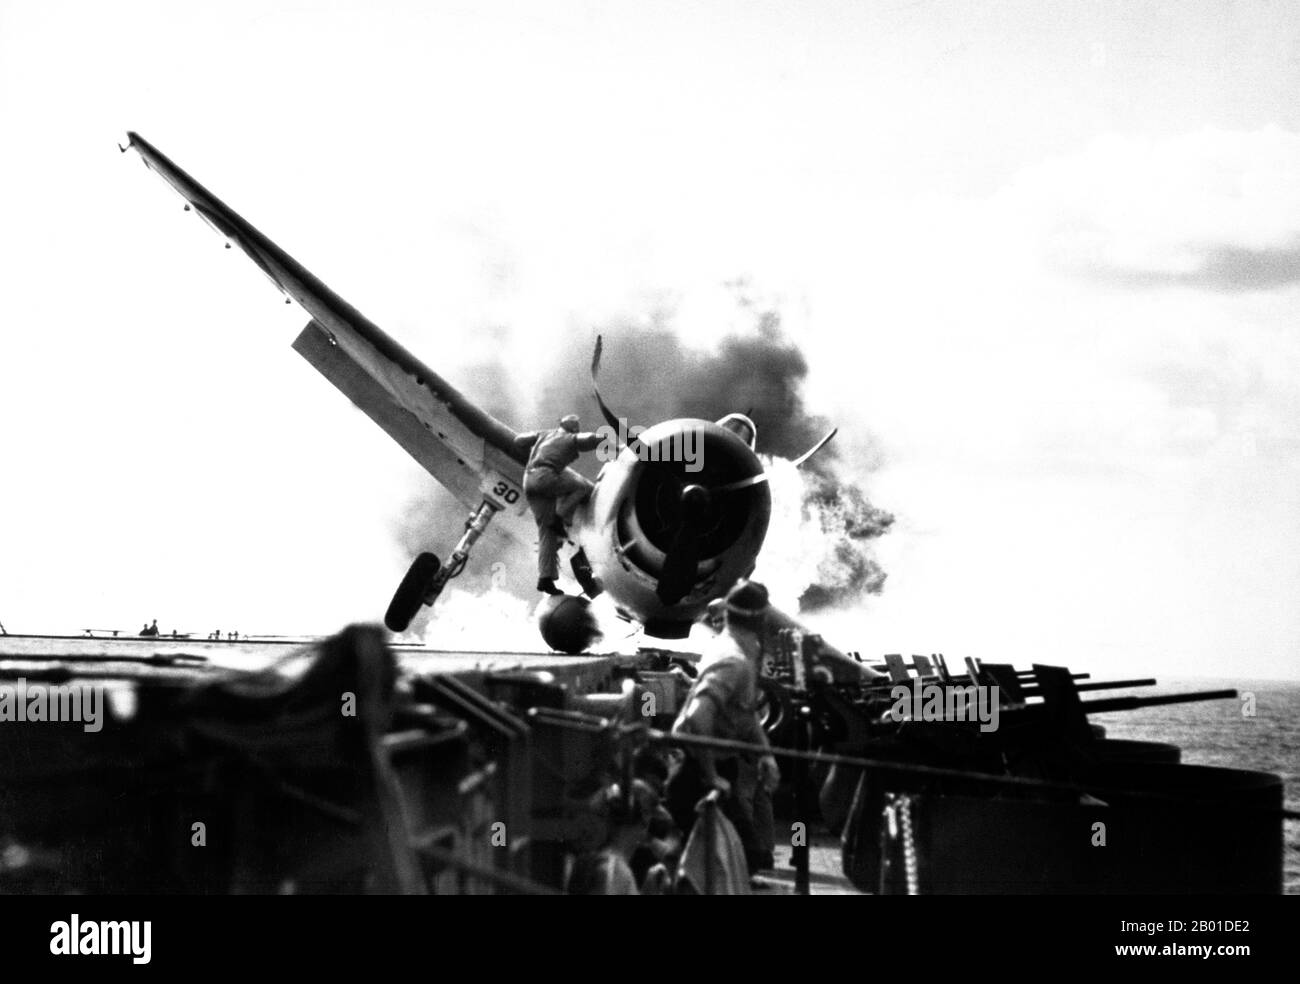 USA/Japan: Ein USAF F6F-3 Crash landete auf dem Deck der USS Enterprise, 10. November 1943. Crash Landung von F6F auf dem Flugdeck der USS Enterprise während des Angriffs auf Makin Island. LT. Walter Chewning, Katapult-Offizier, klammert die Seite des Flugzeugs hoch, um dem Piloten, Fähnrich Byron Johnson, aus dem brennenden Cockpit zu helfen. Stockfoto